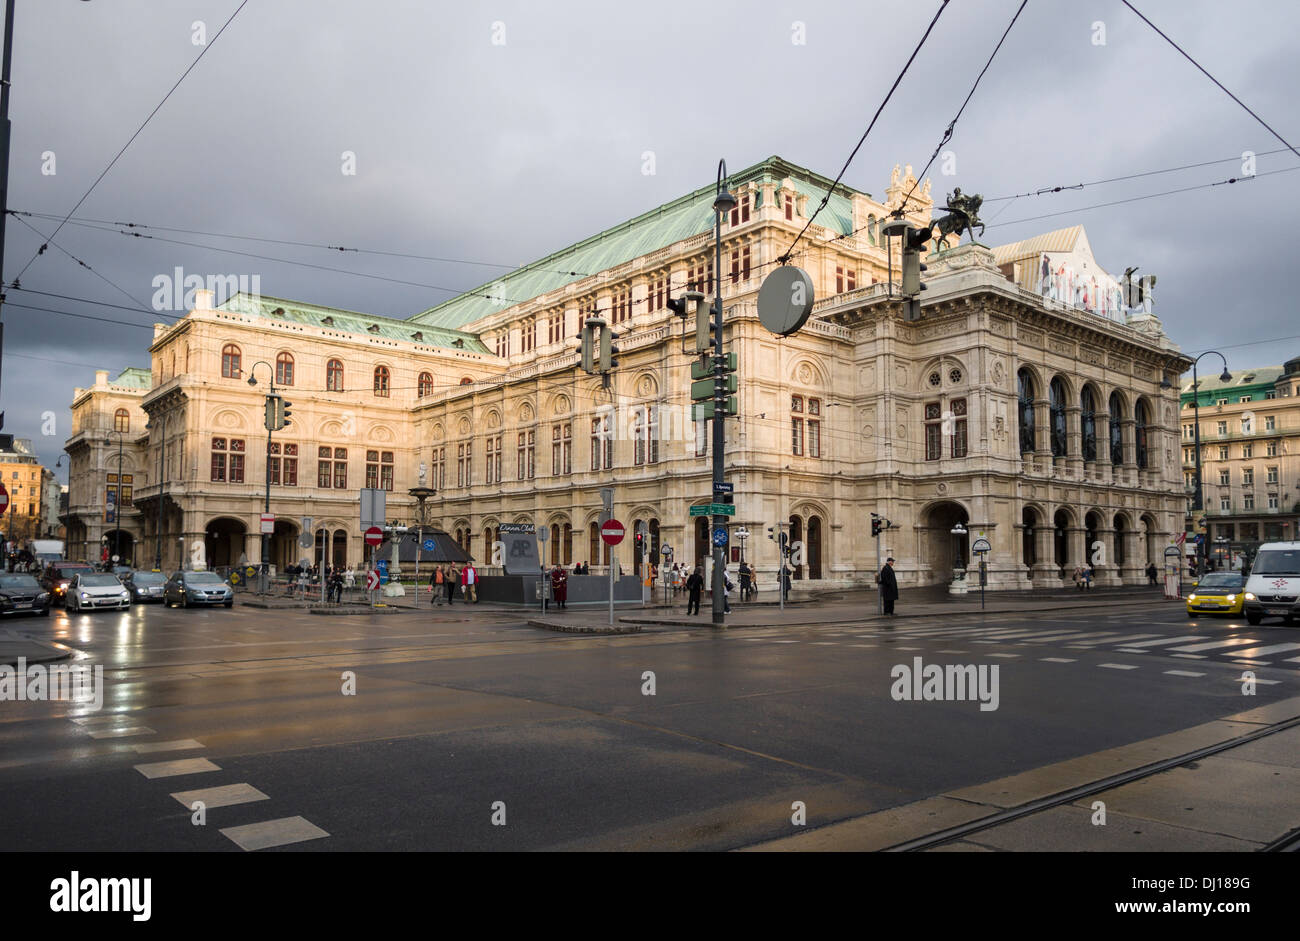 Vienna Opera House e da Ringstrasse al tramonto. Un panno di strada mette in evidenza la massiccia costruzione in pietra. Foto Stock